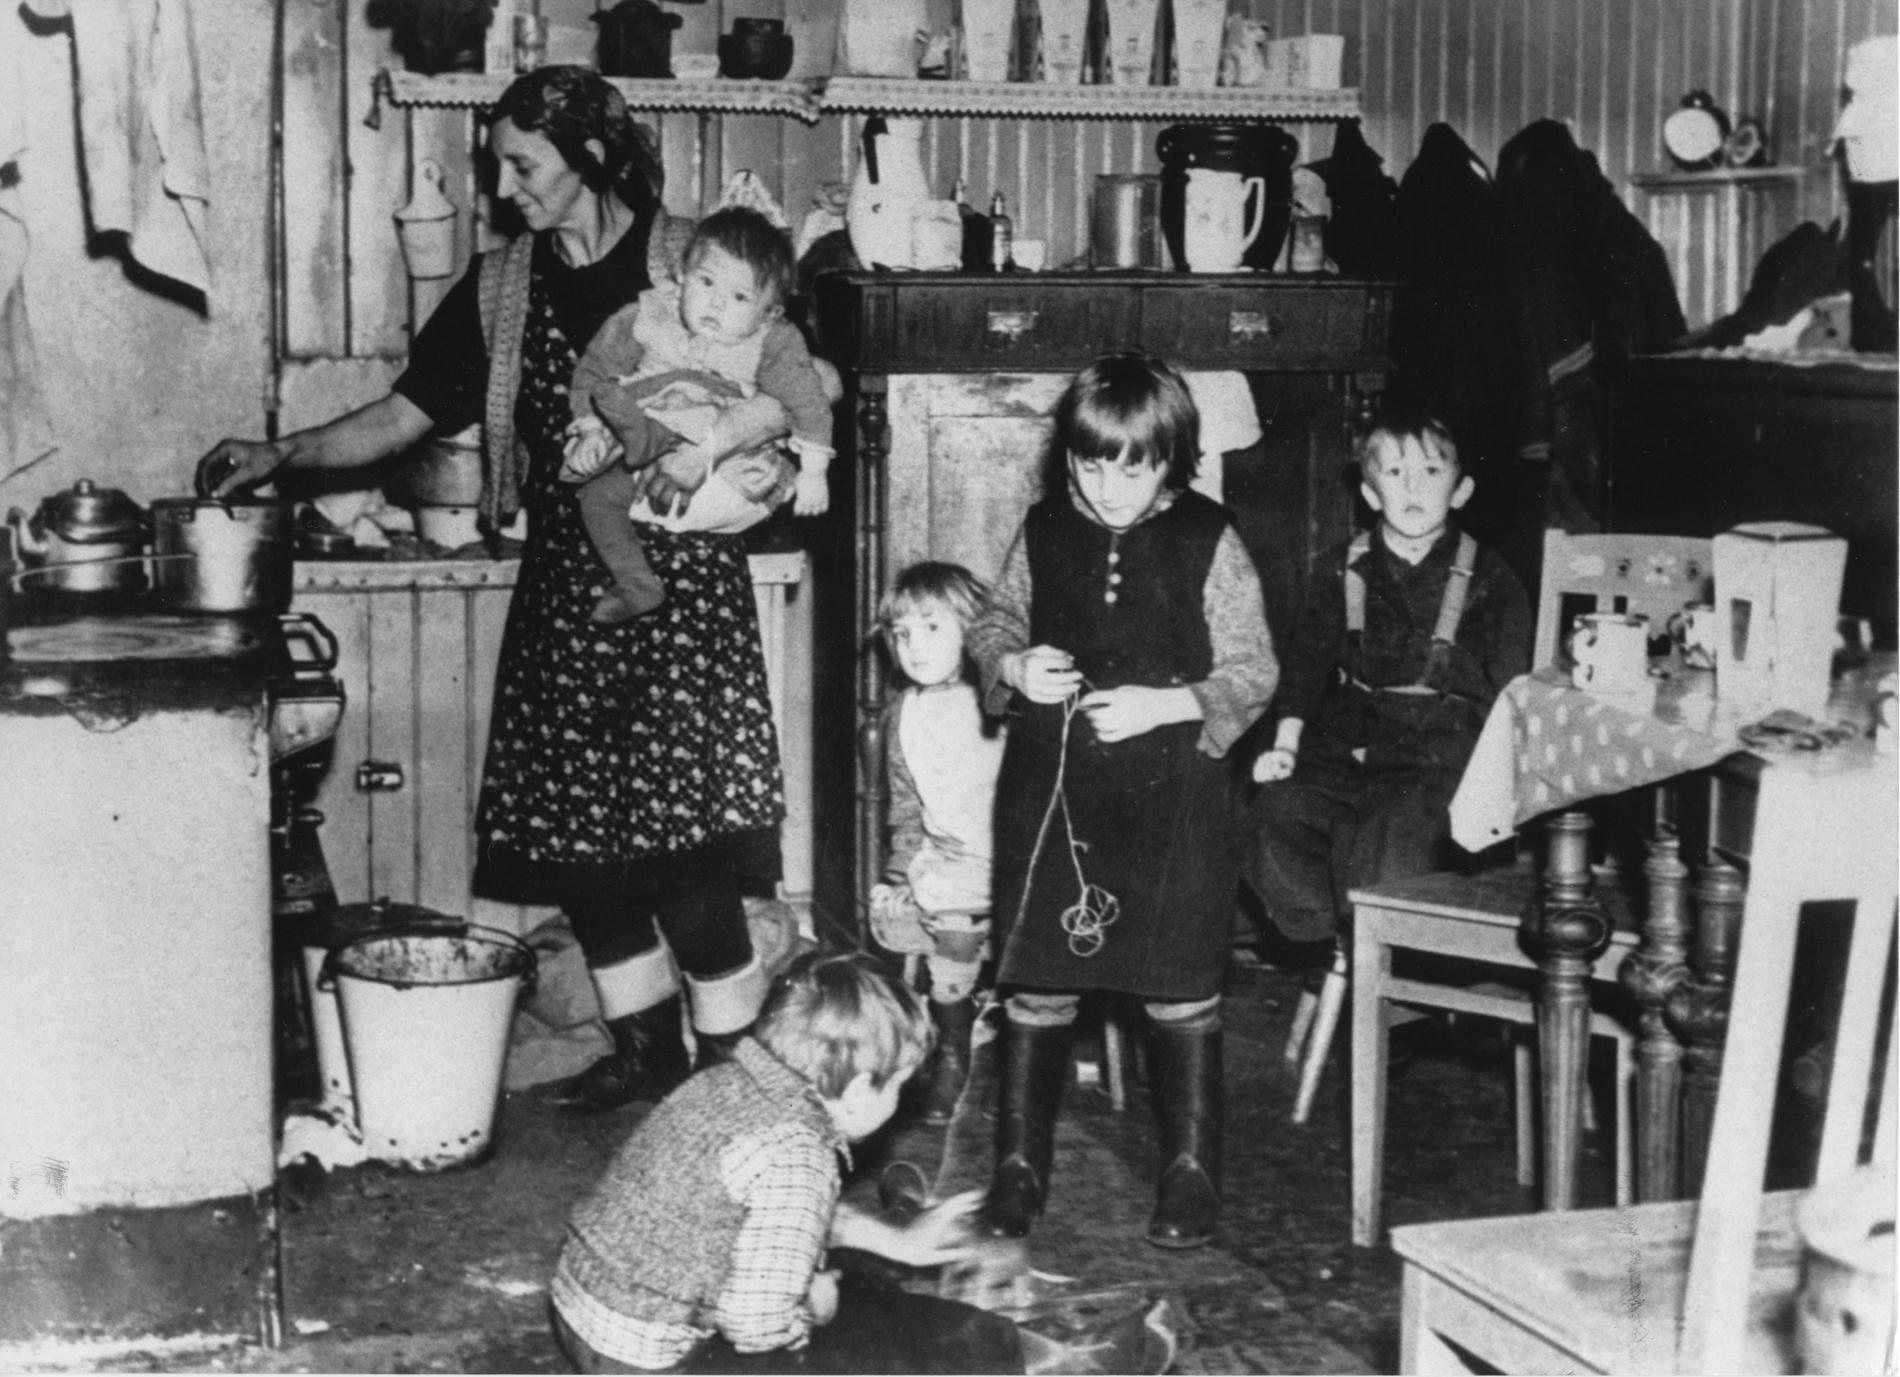 Fattig-Sverige. Arbetarfamilj i Stockholm på 40-talet. Kvinna i förkläde och med barn på armen står vid spisen och lagar mat . Fyra barn leker på köksgolvet.